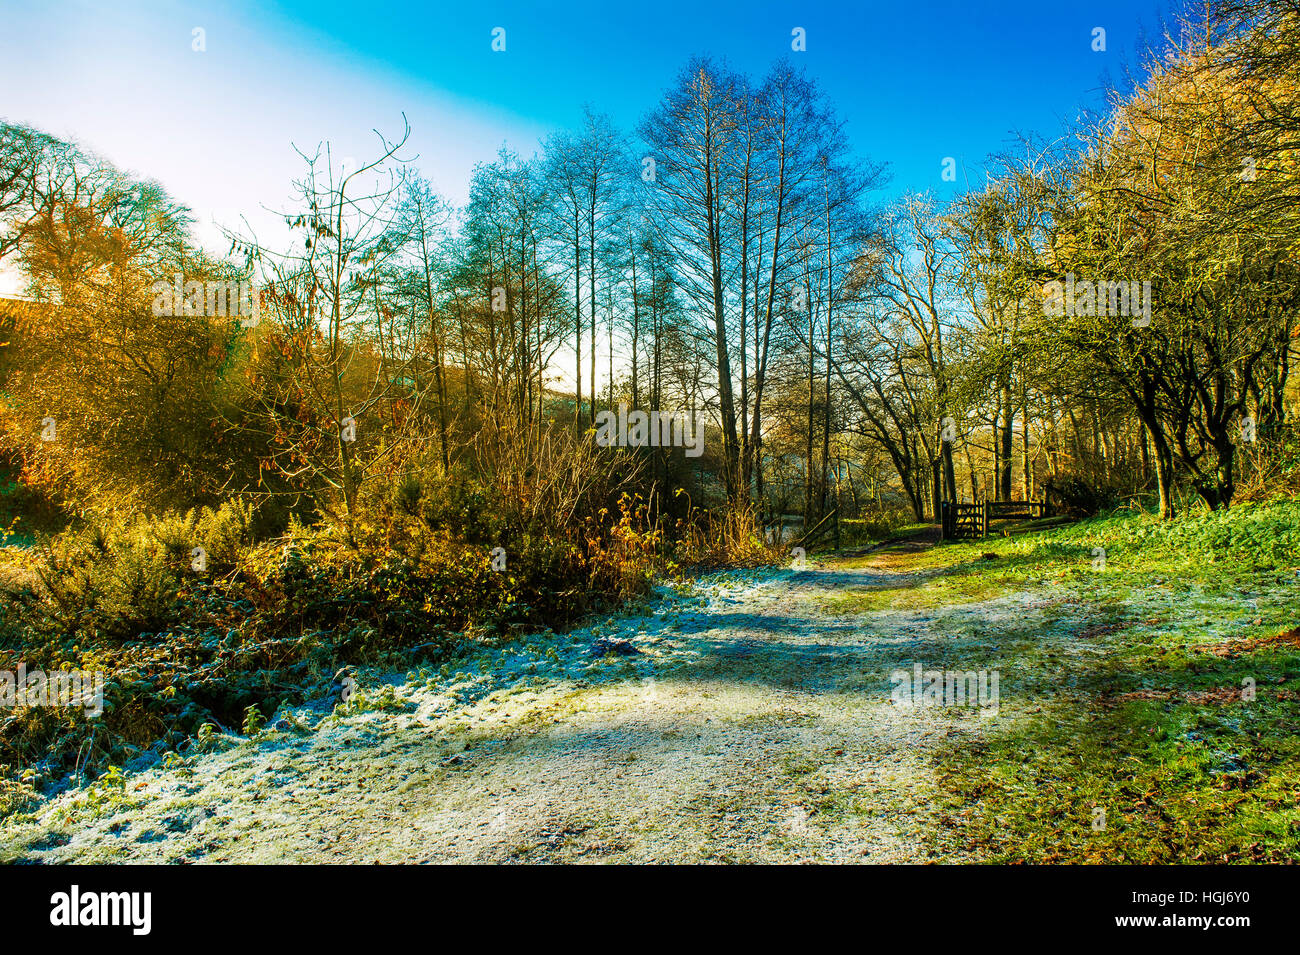 frostige Landschaft. Track bedeckt in Frost zu einem Tor führt. Sonnenschein Beleuchtung goldene Blätter an den Bäumen Stockfoto